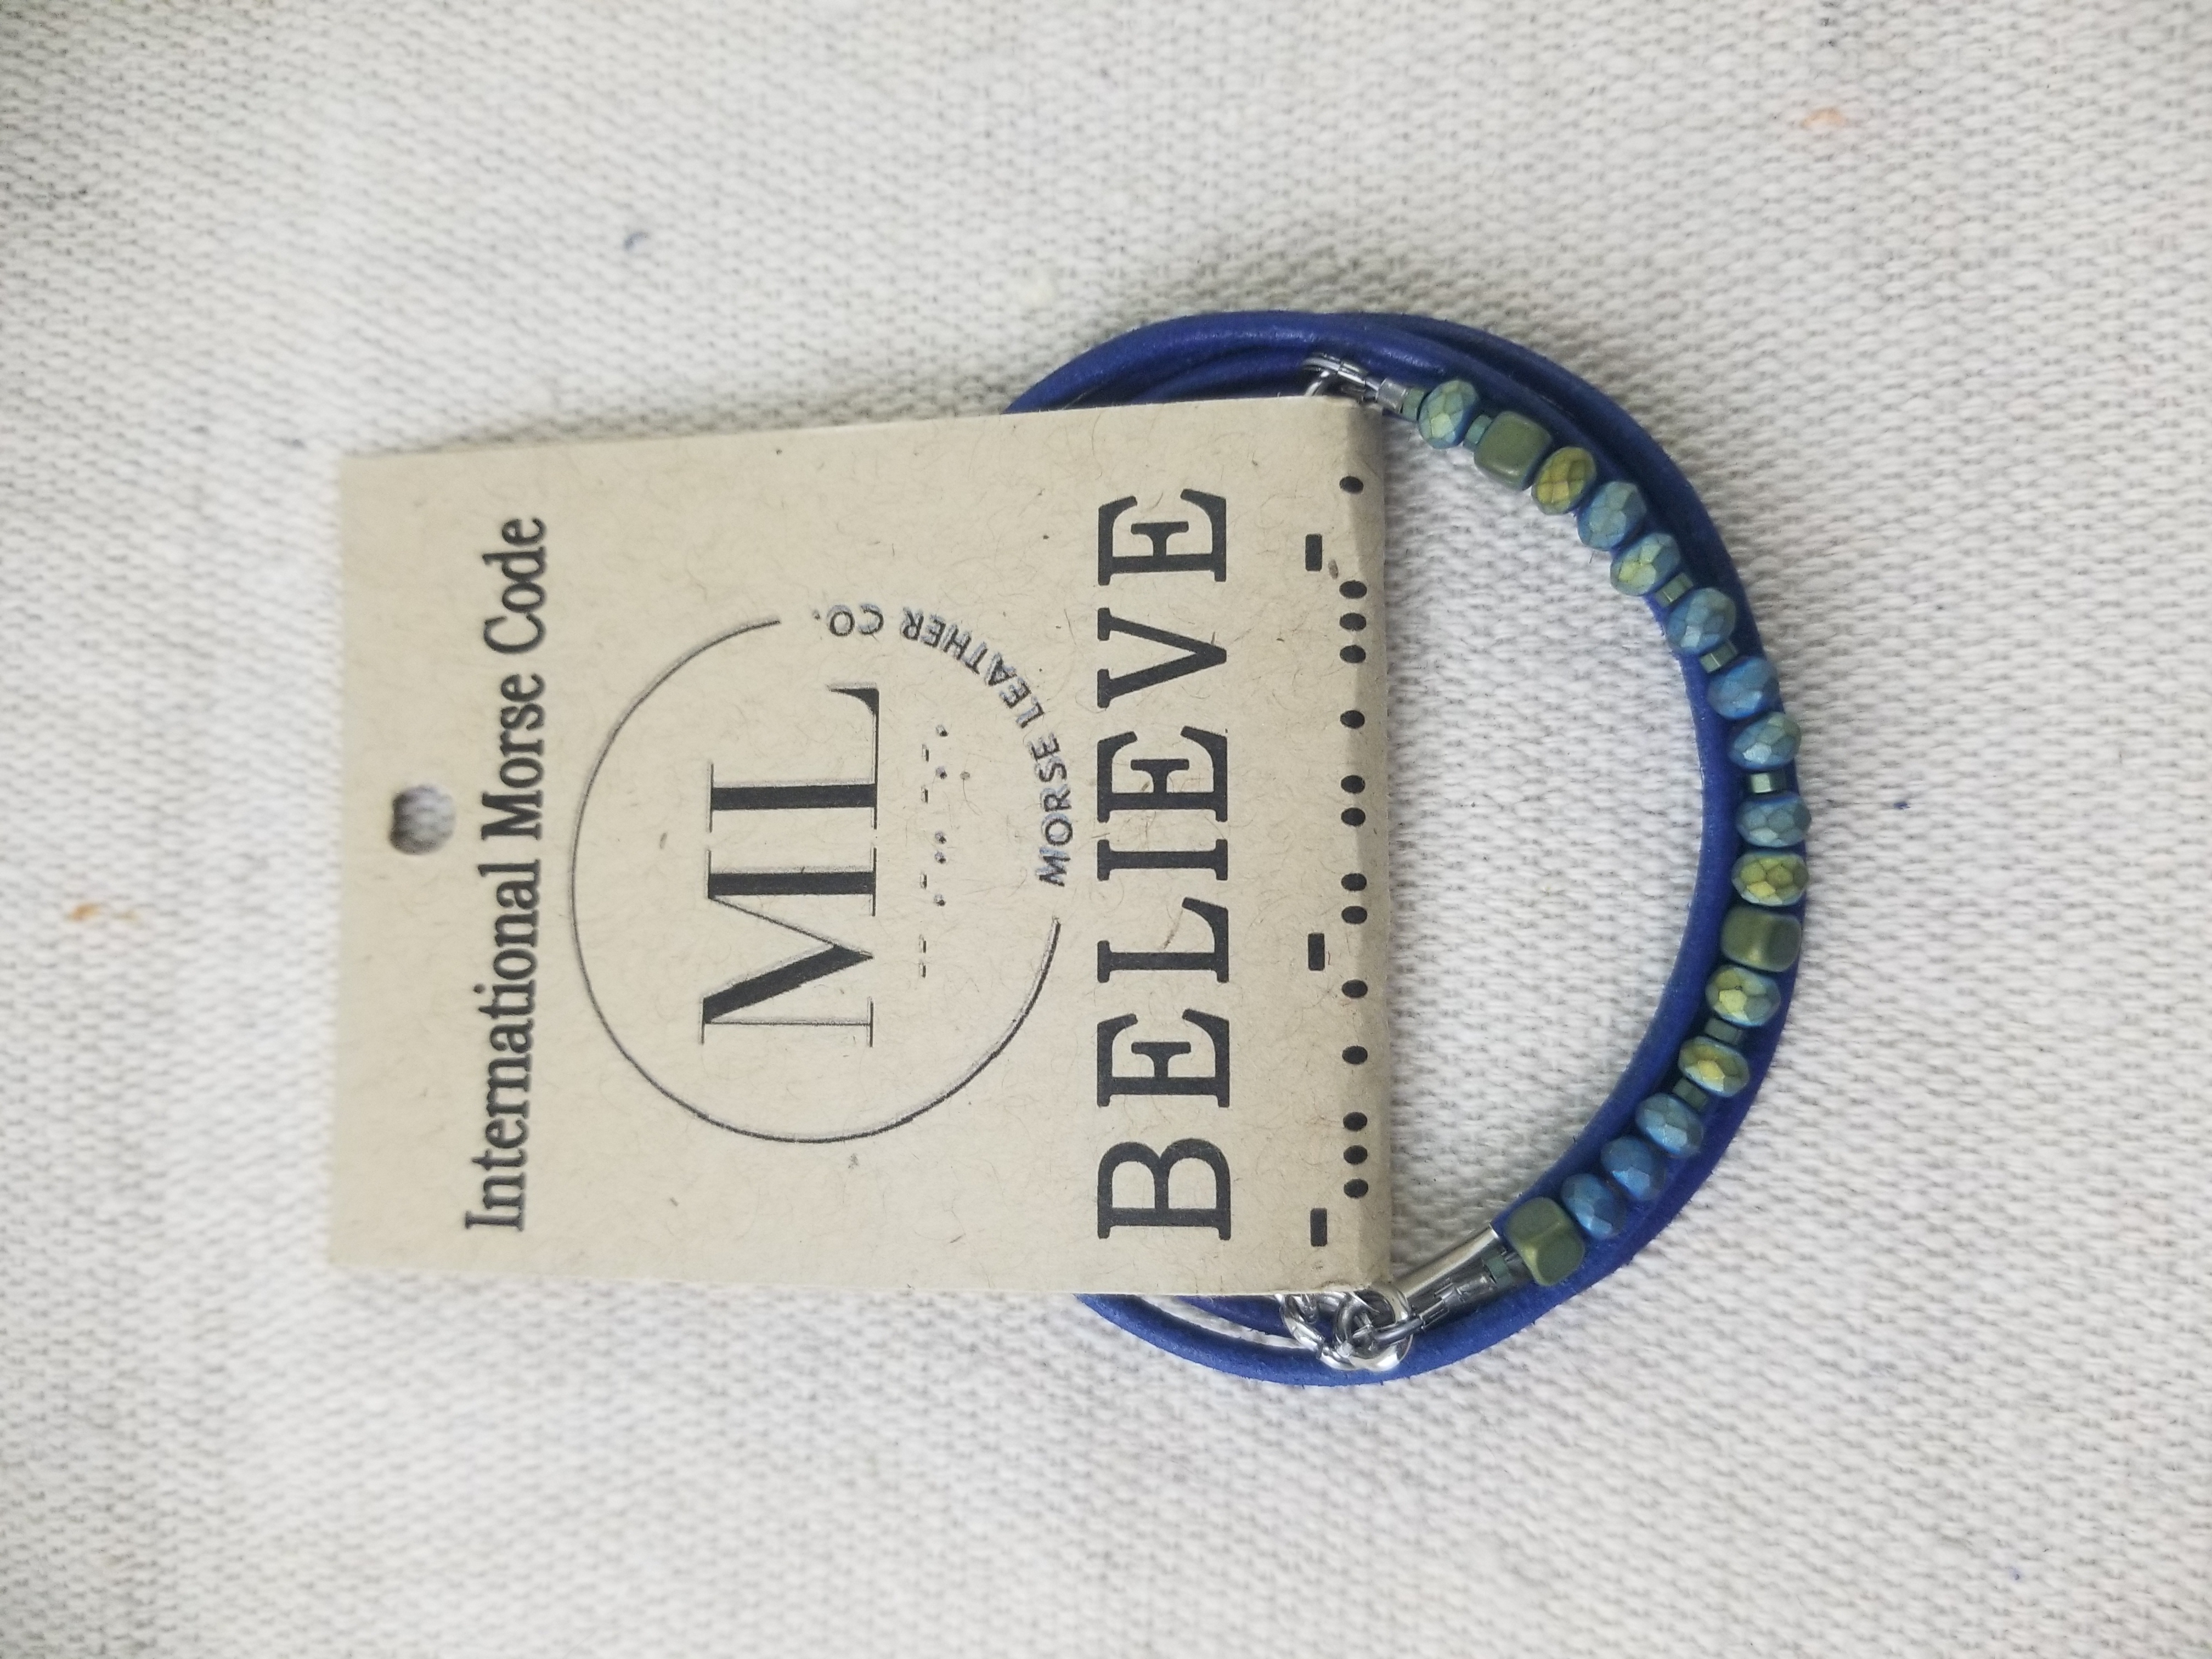 BELIEVE - Morse Code Bracelet